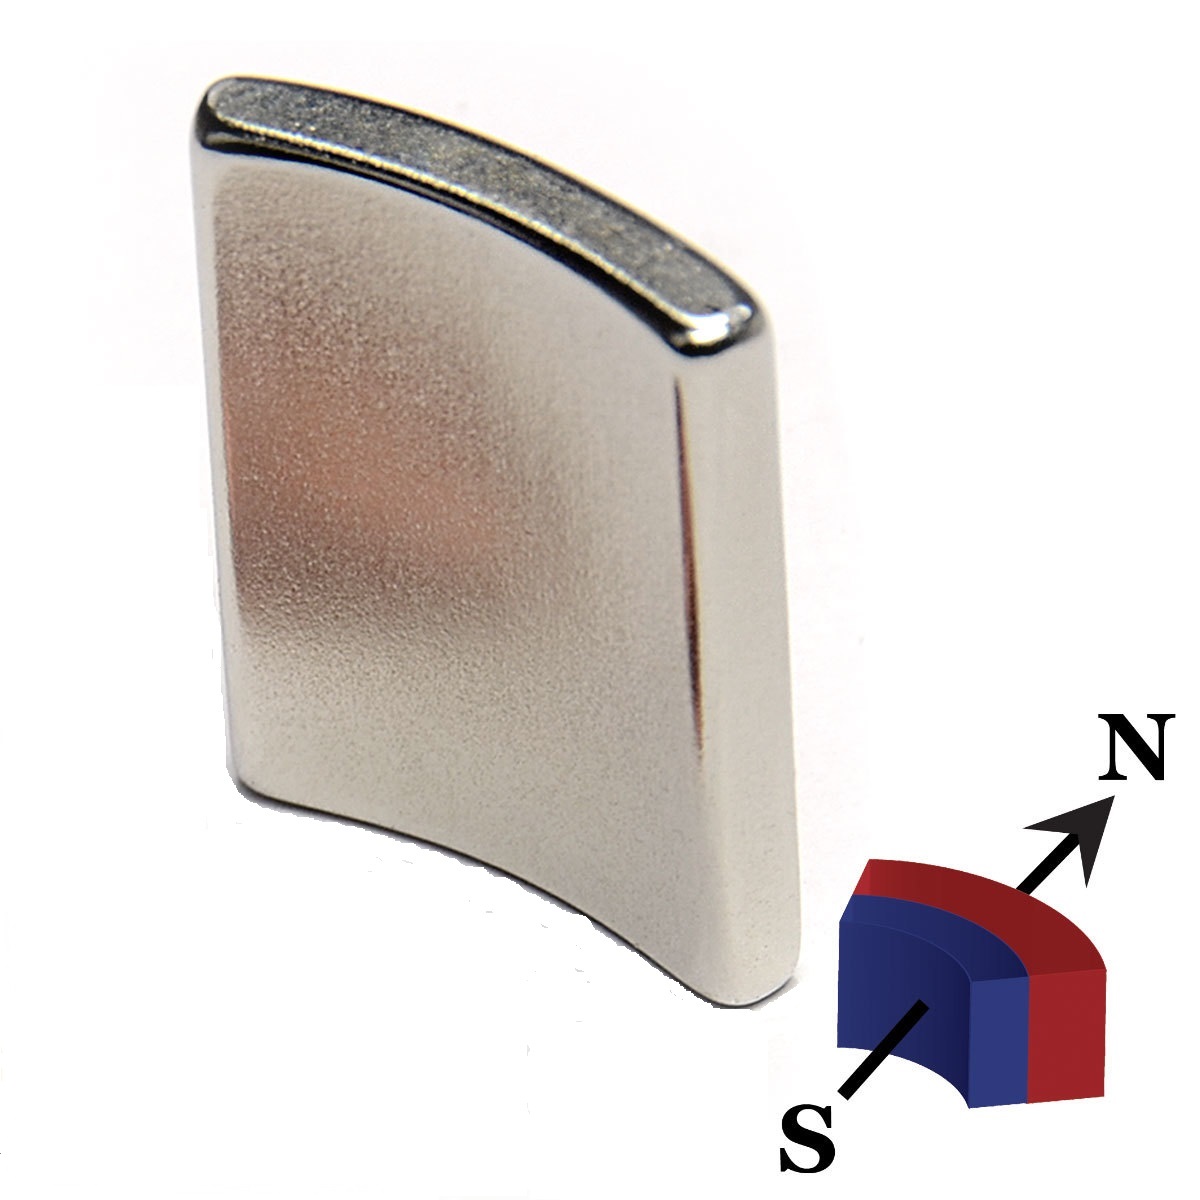 Starke Neodym- Segment Magnete Arc Segment Magneten Stab Stabmagnete Gehrung Mitra 45° Magnetstäbe Mitre Magnet Stabmagnet mit Motor, Magnet, Magnete, Supermagnete